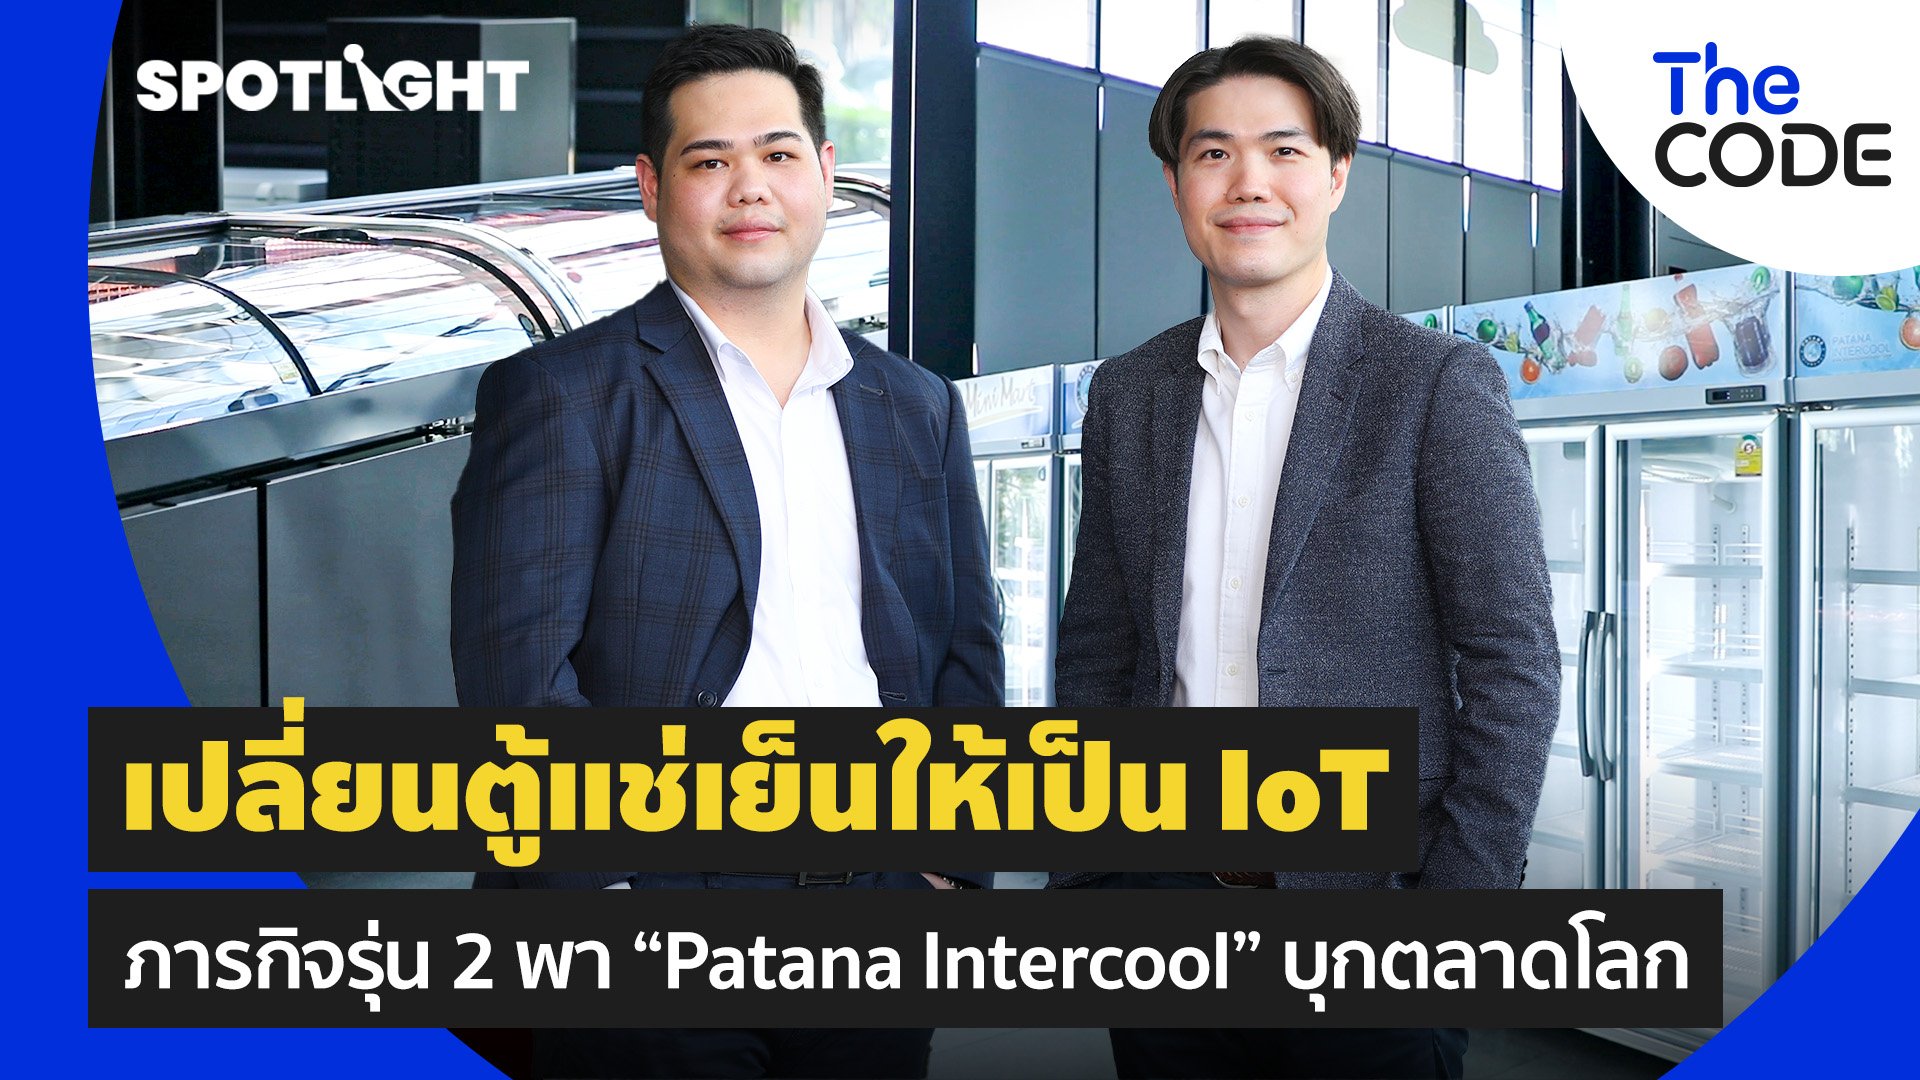 เปลี่ยนตู้แช่เย็นให้เป็น IoT ภารกิจรุ่น 2 พา “Patana Intercool” บุกตลาดโลก | Spotlight | 18 ส.ค. 65 | AMARIN TVHD34